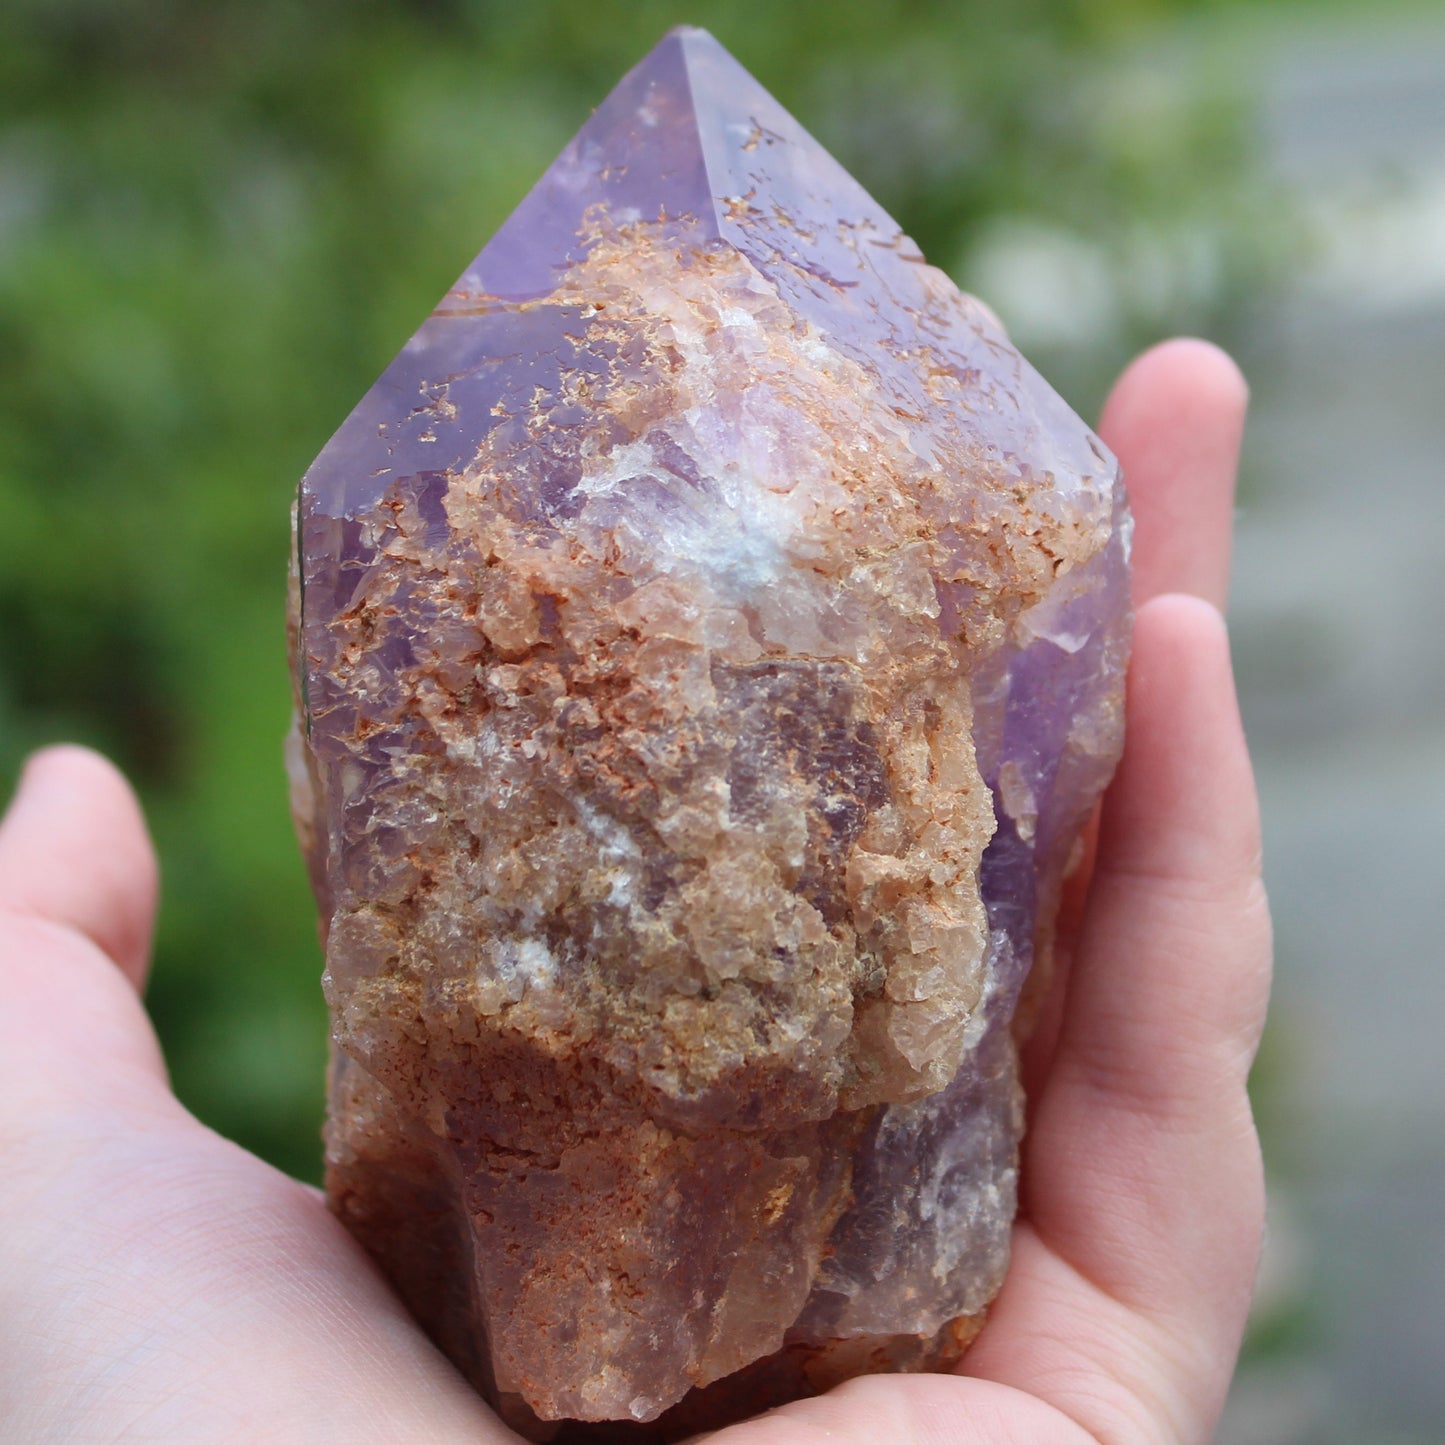 Amethyst crystal point rough 628g